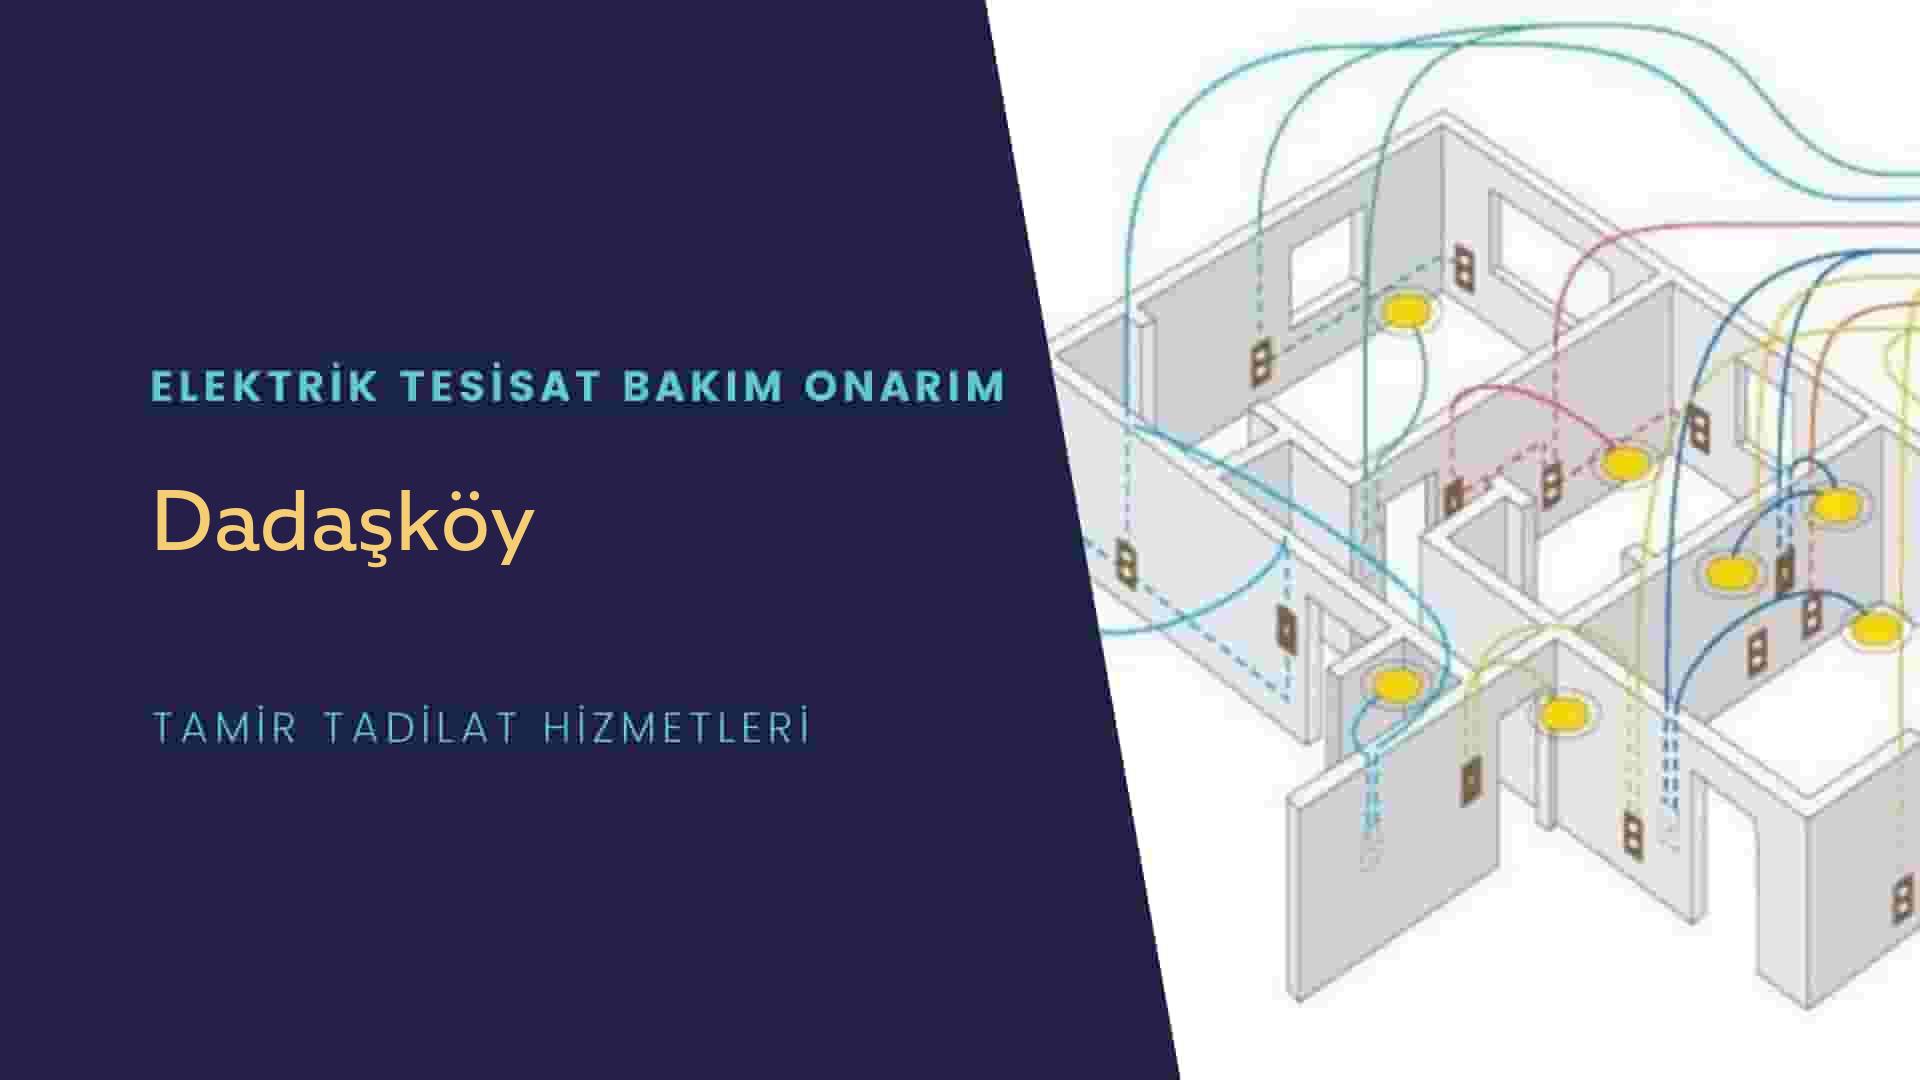 Dadaşköy'de elektrik tesisatı ustalarımı arıyorsunuz doğru adrestenizi Dadaşköy elektrik tesisatı ustalarımız 7/24 sizlere hizmet vermekten mutluluk duyar.